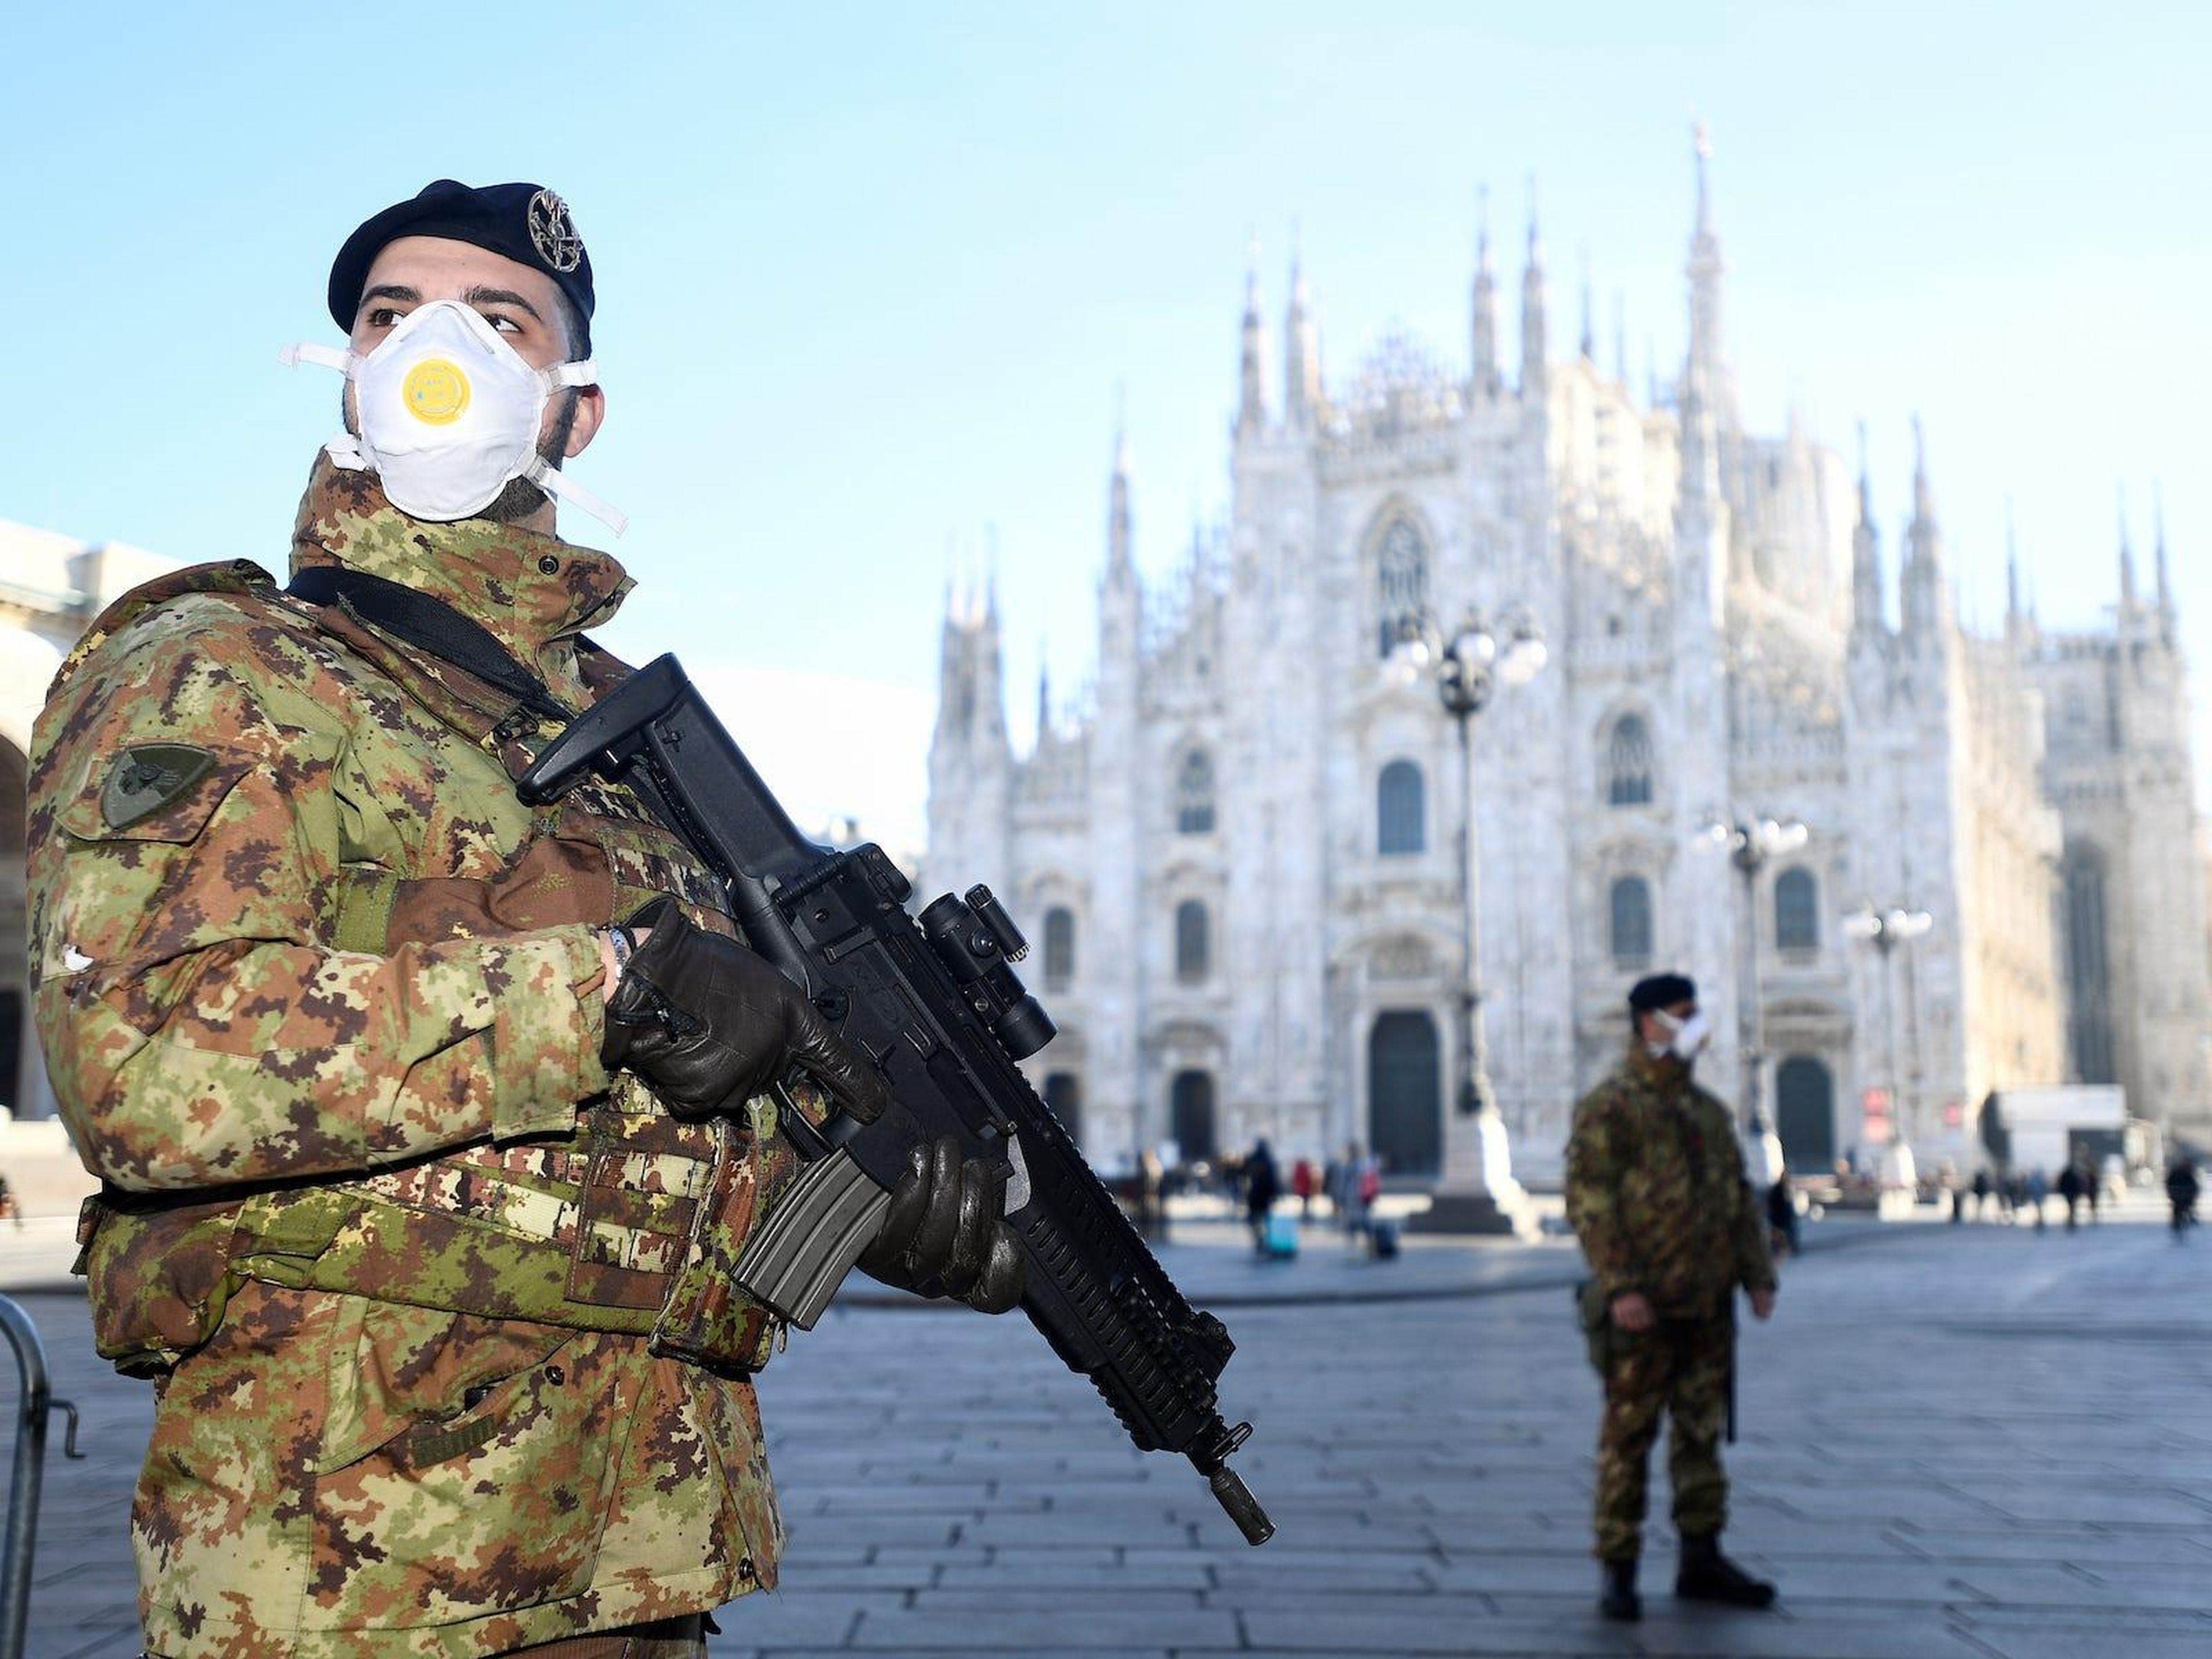 Oficiales militares con mascarilla se encuentran fuera de la catedral del Duomo, cerrada por las autoridades debido a un brote de coronavirus, en Milán, Italia, el 24 de febrero de 2020.